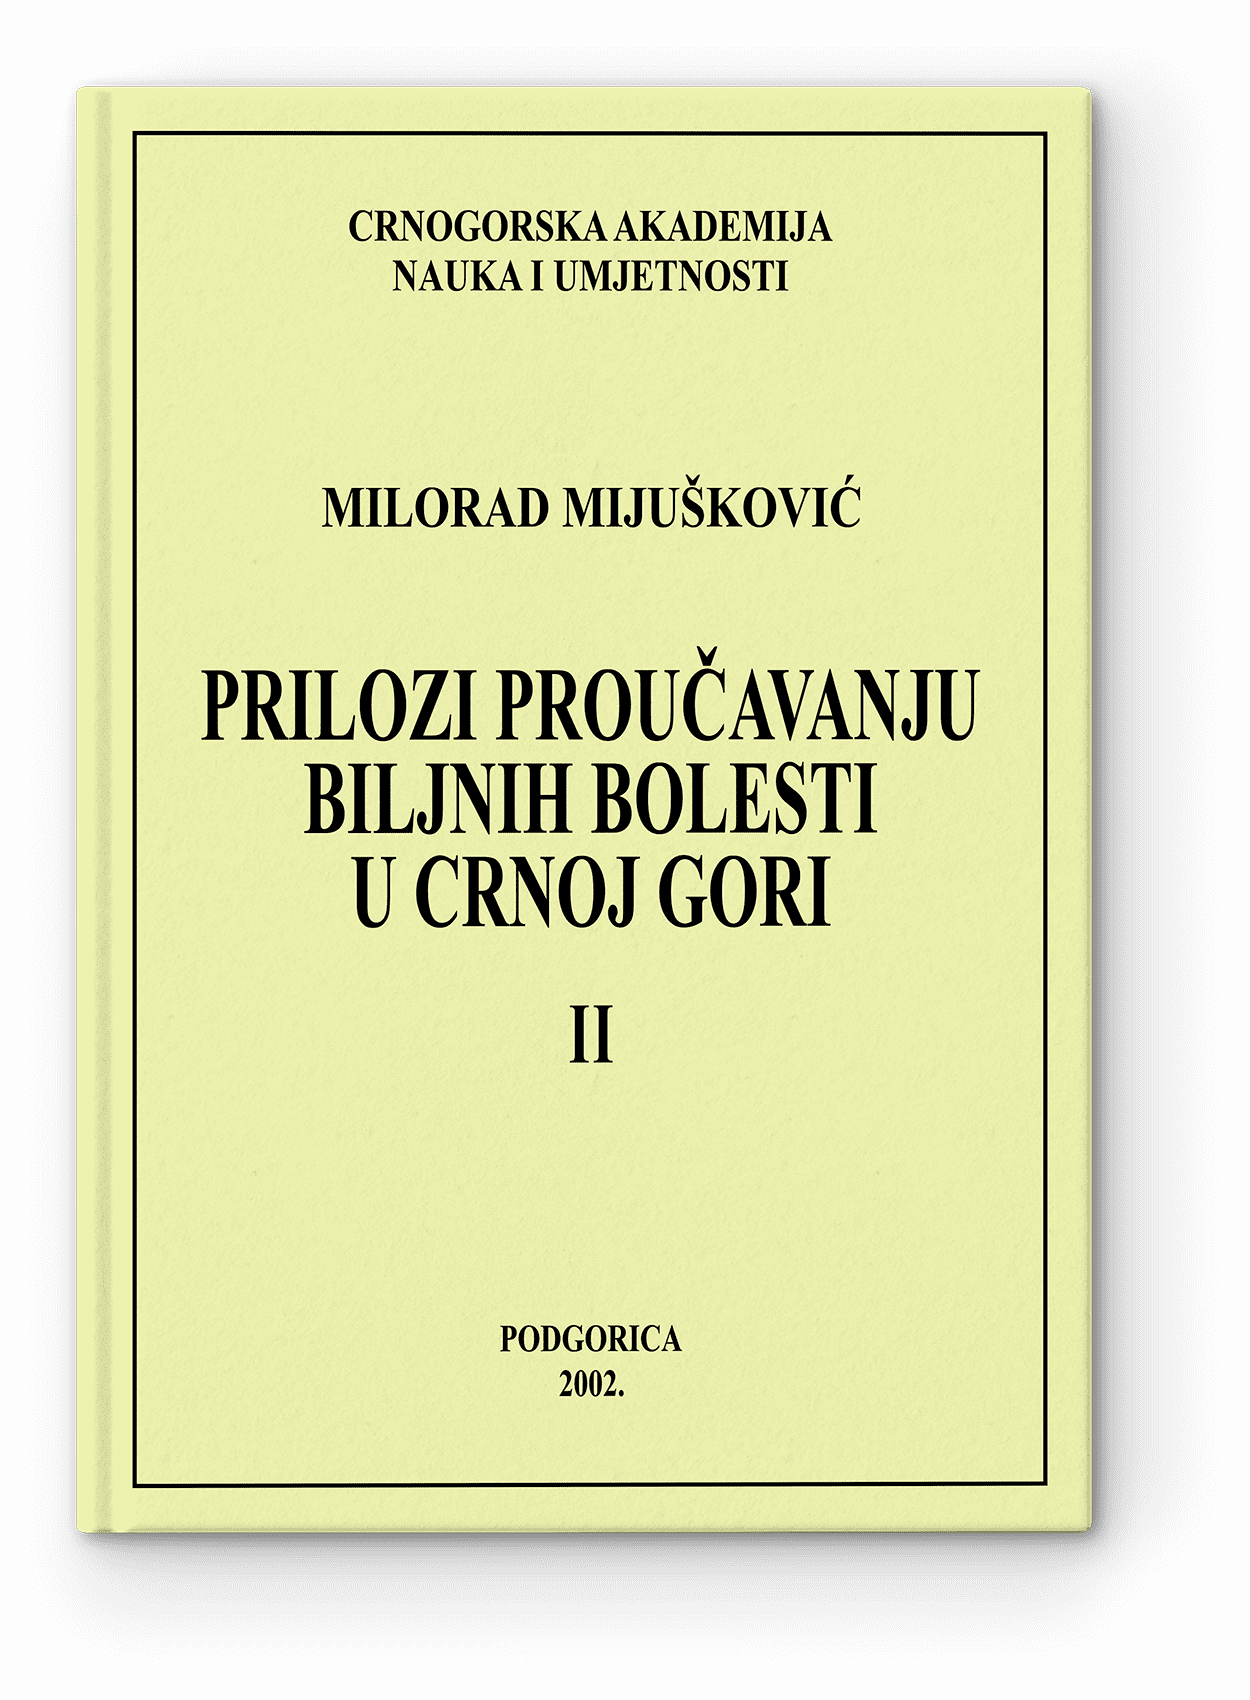 Milorad Mijušković: Peilozi proučavanju biljnih bolesti u Crnoj Gori, II